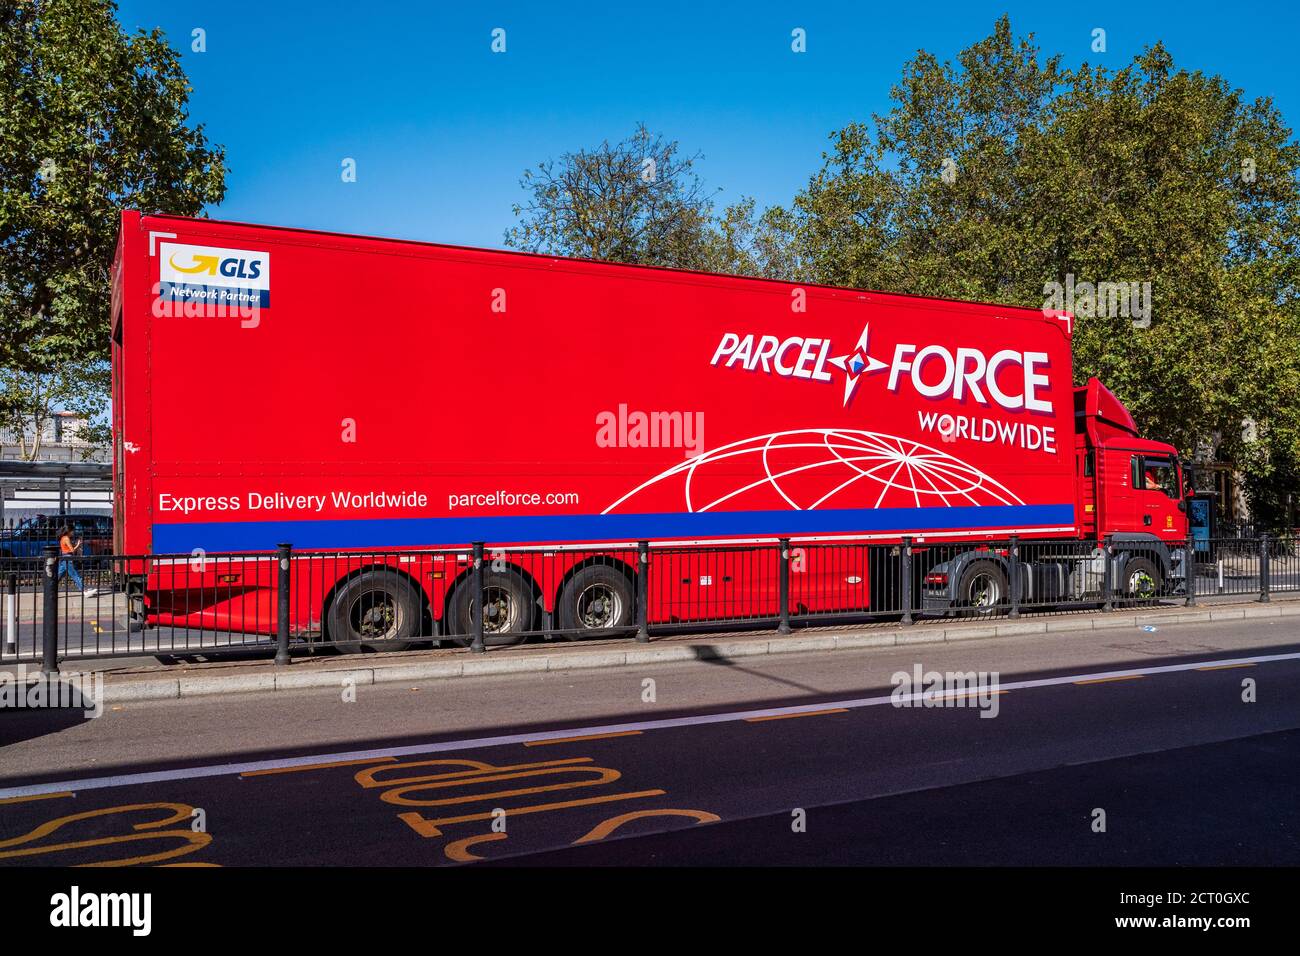 Paketforce Truck oder Paketforce Truck in Central London. Paketforce Worldwide ist eine Tochtergesellschaft von Royal Mail. Stockfoto